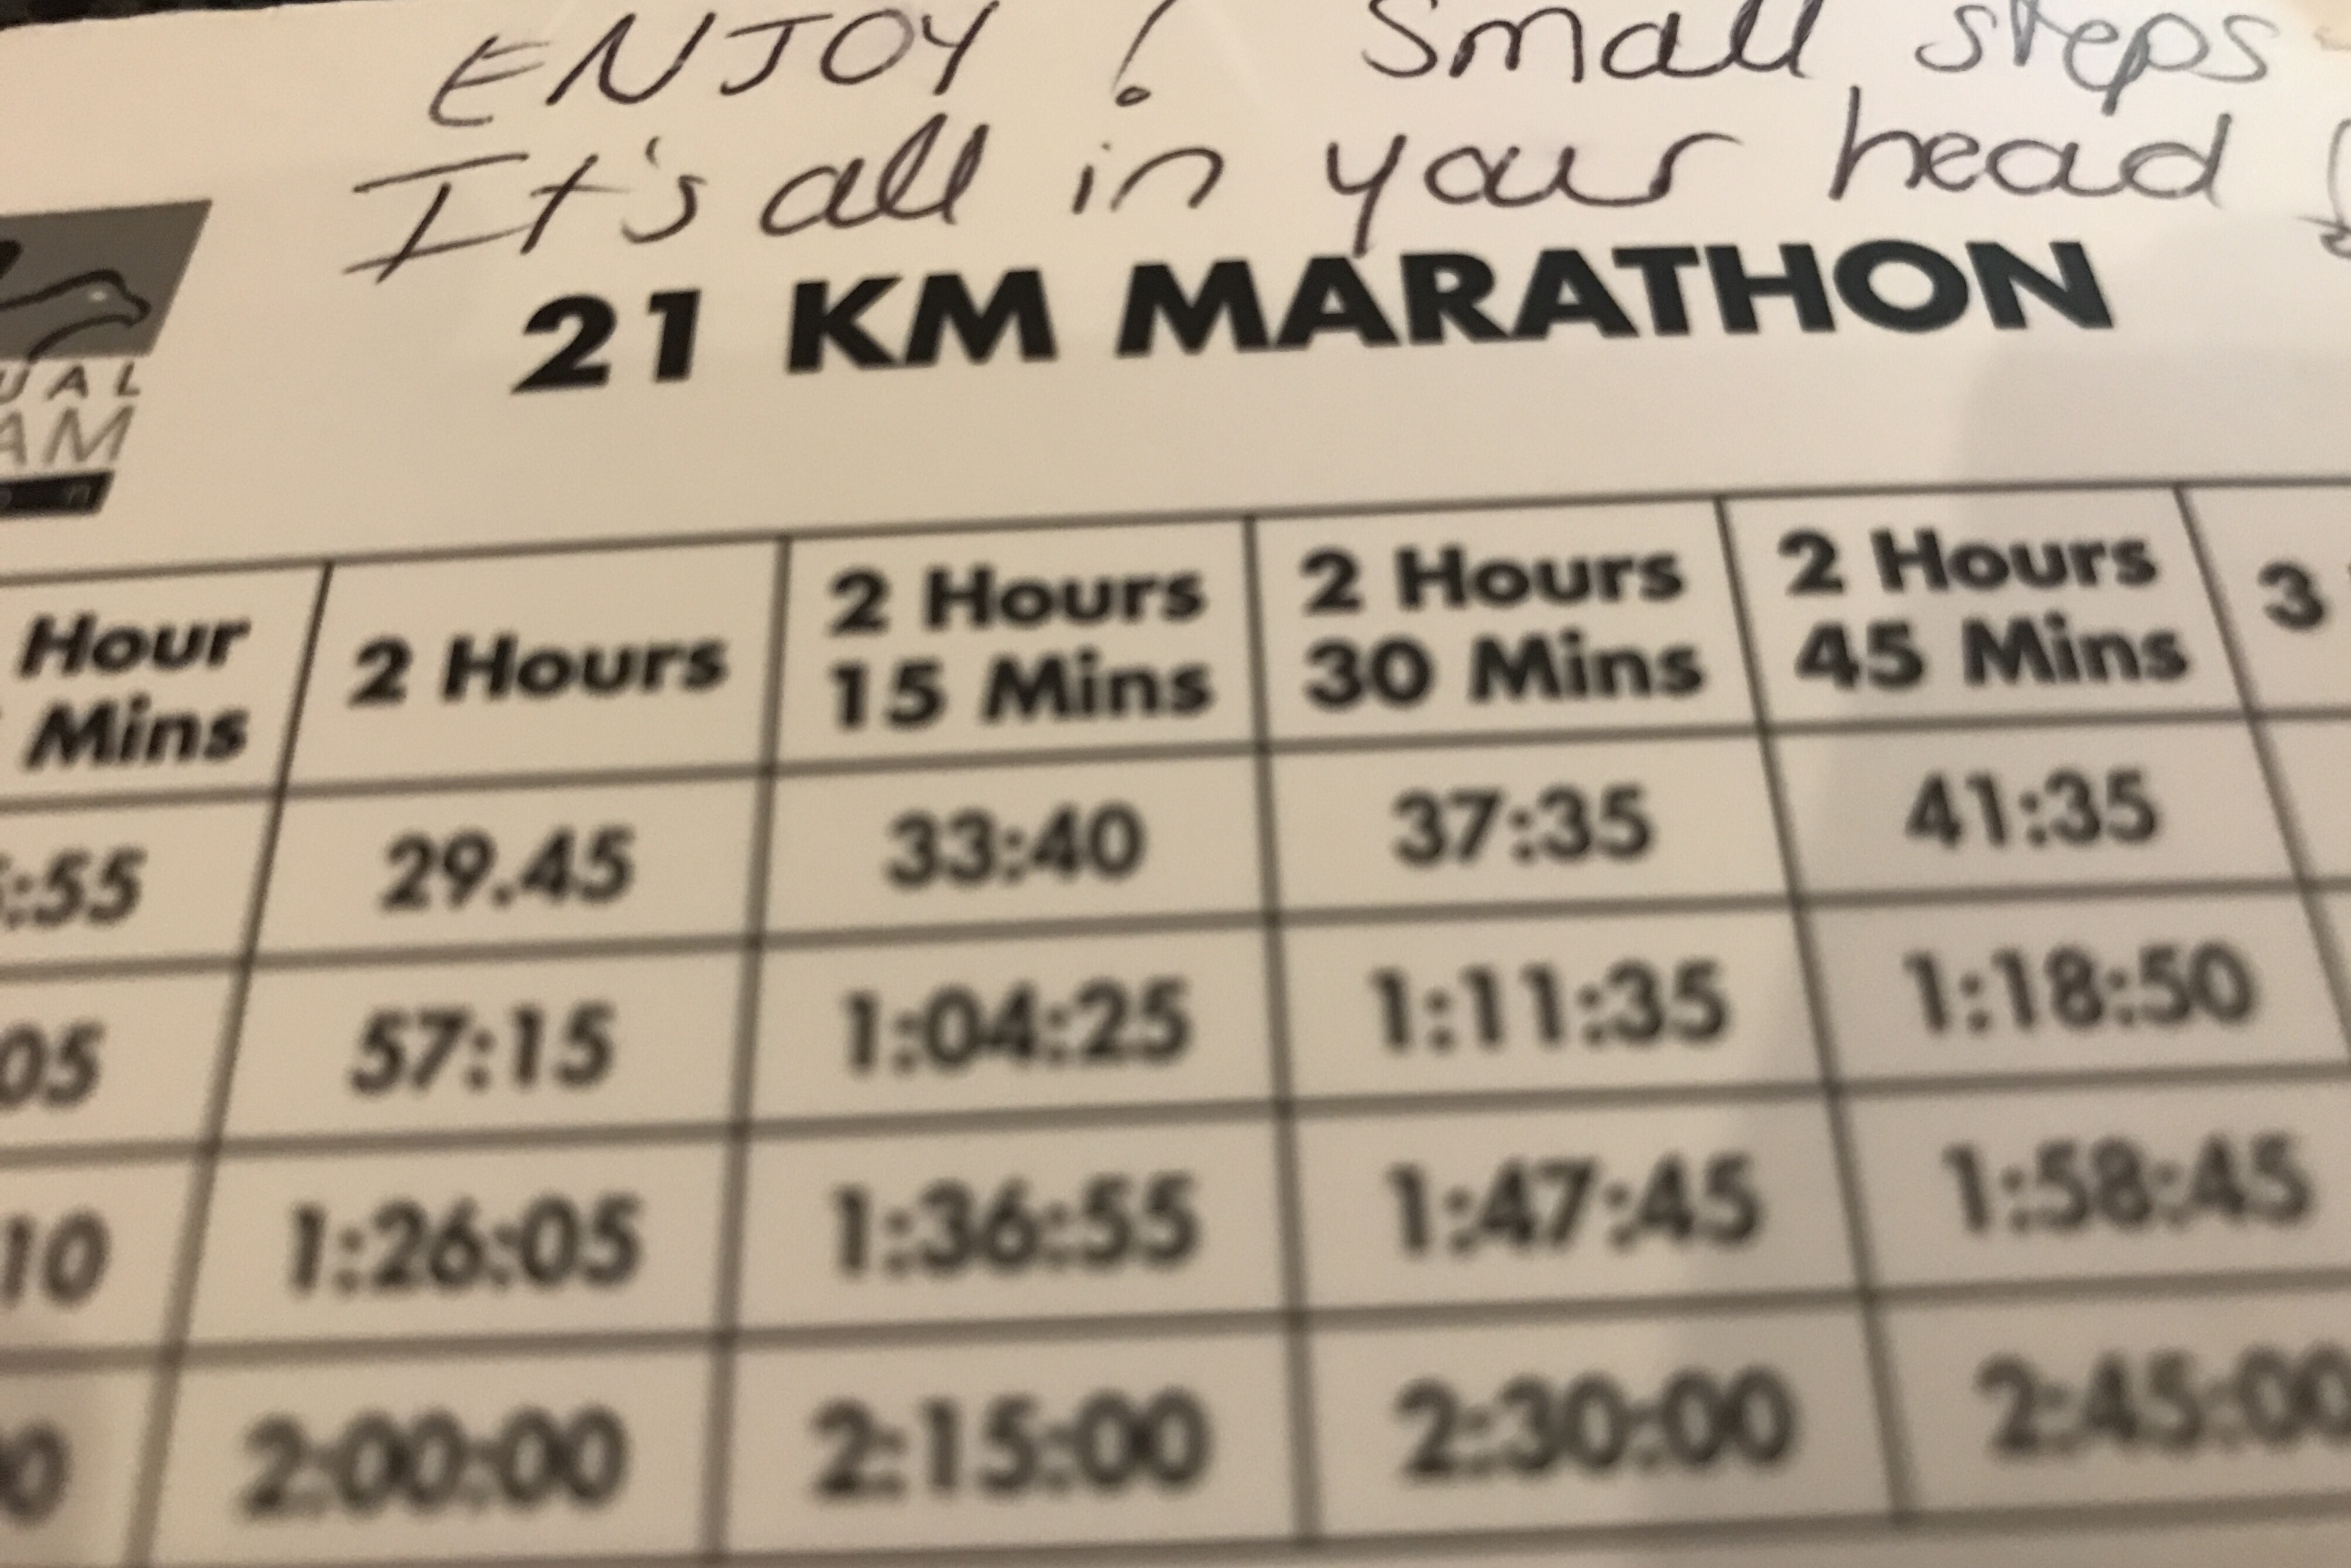 Comrades Marathon Pacing Charts